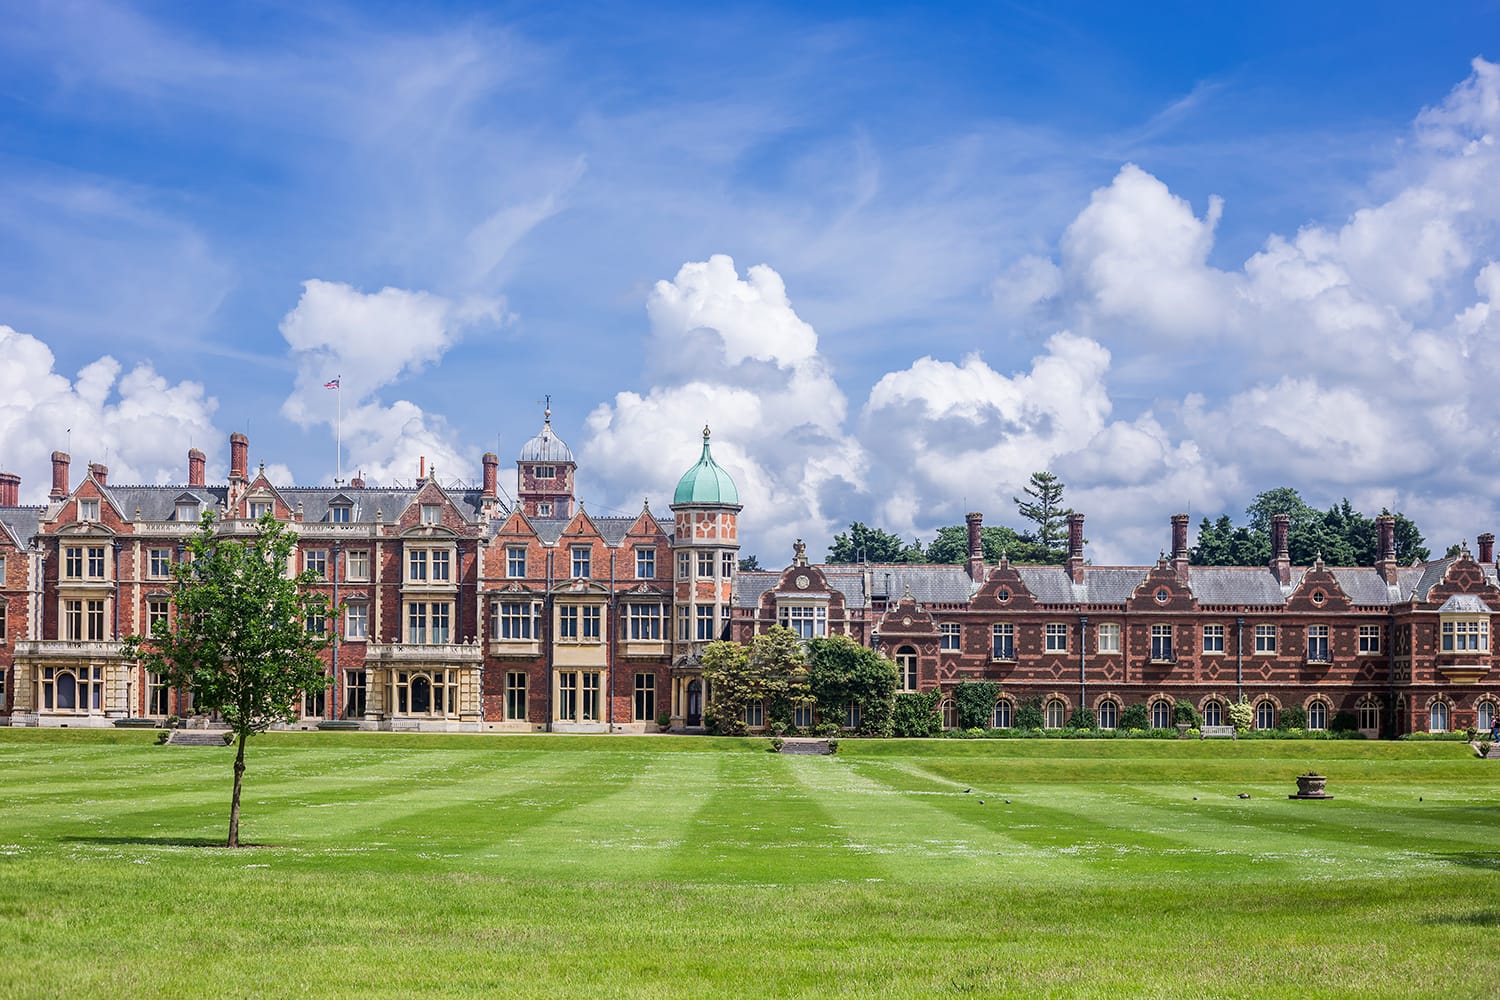 Sandringham House, the Queen's country residence near Kings Lynn, Norfolk, UK